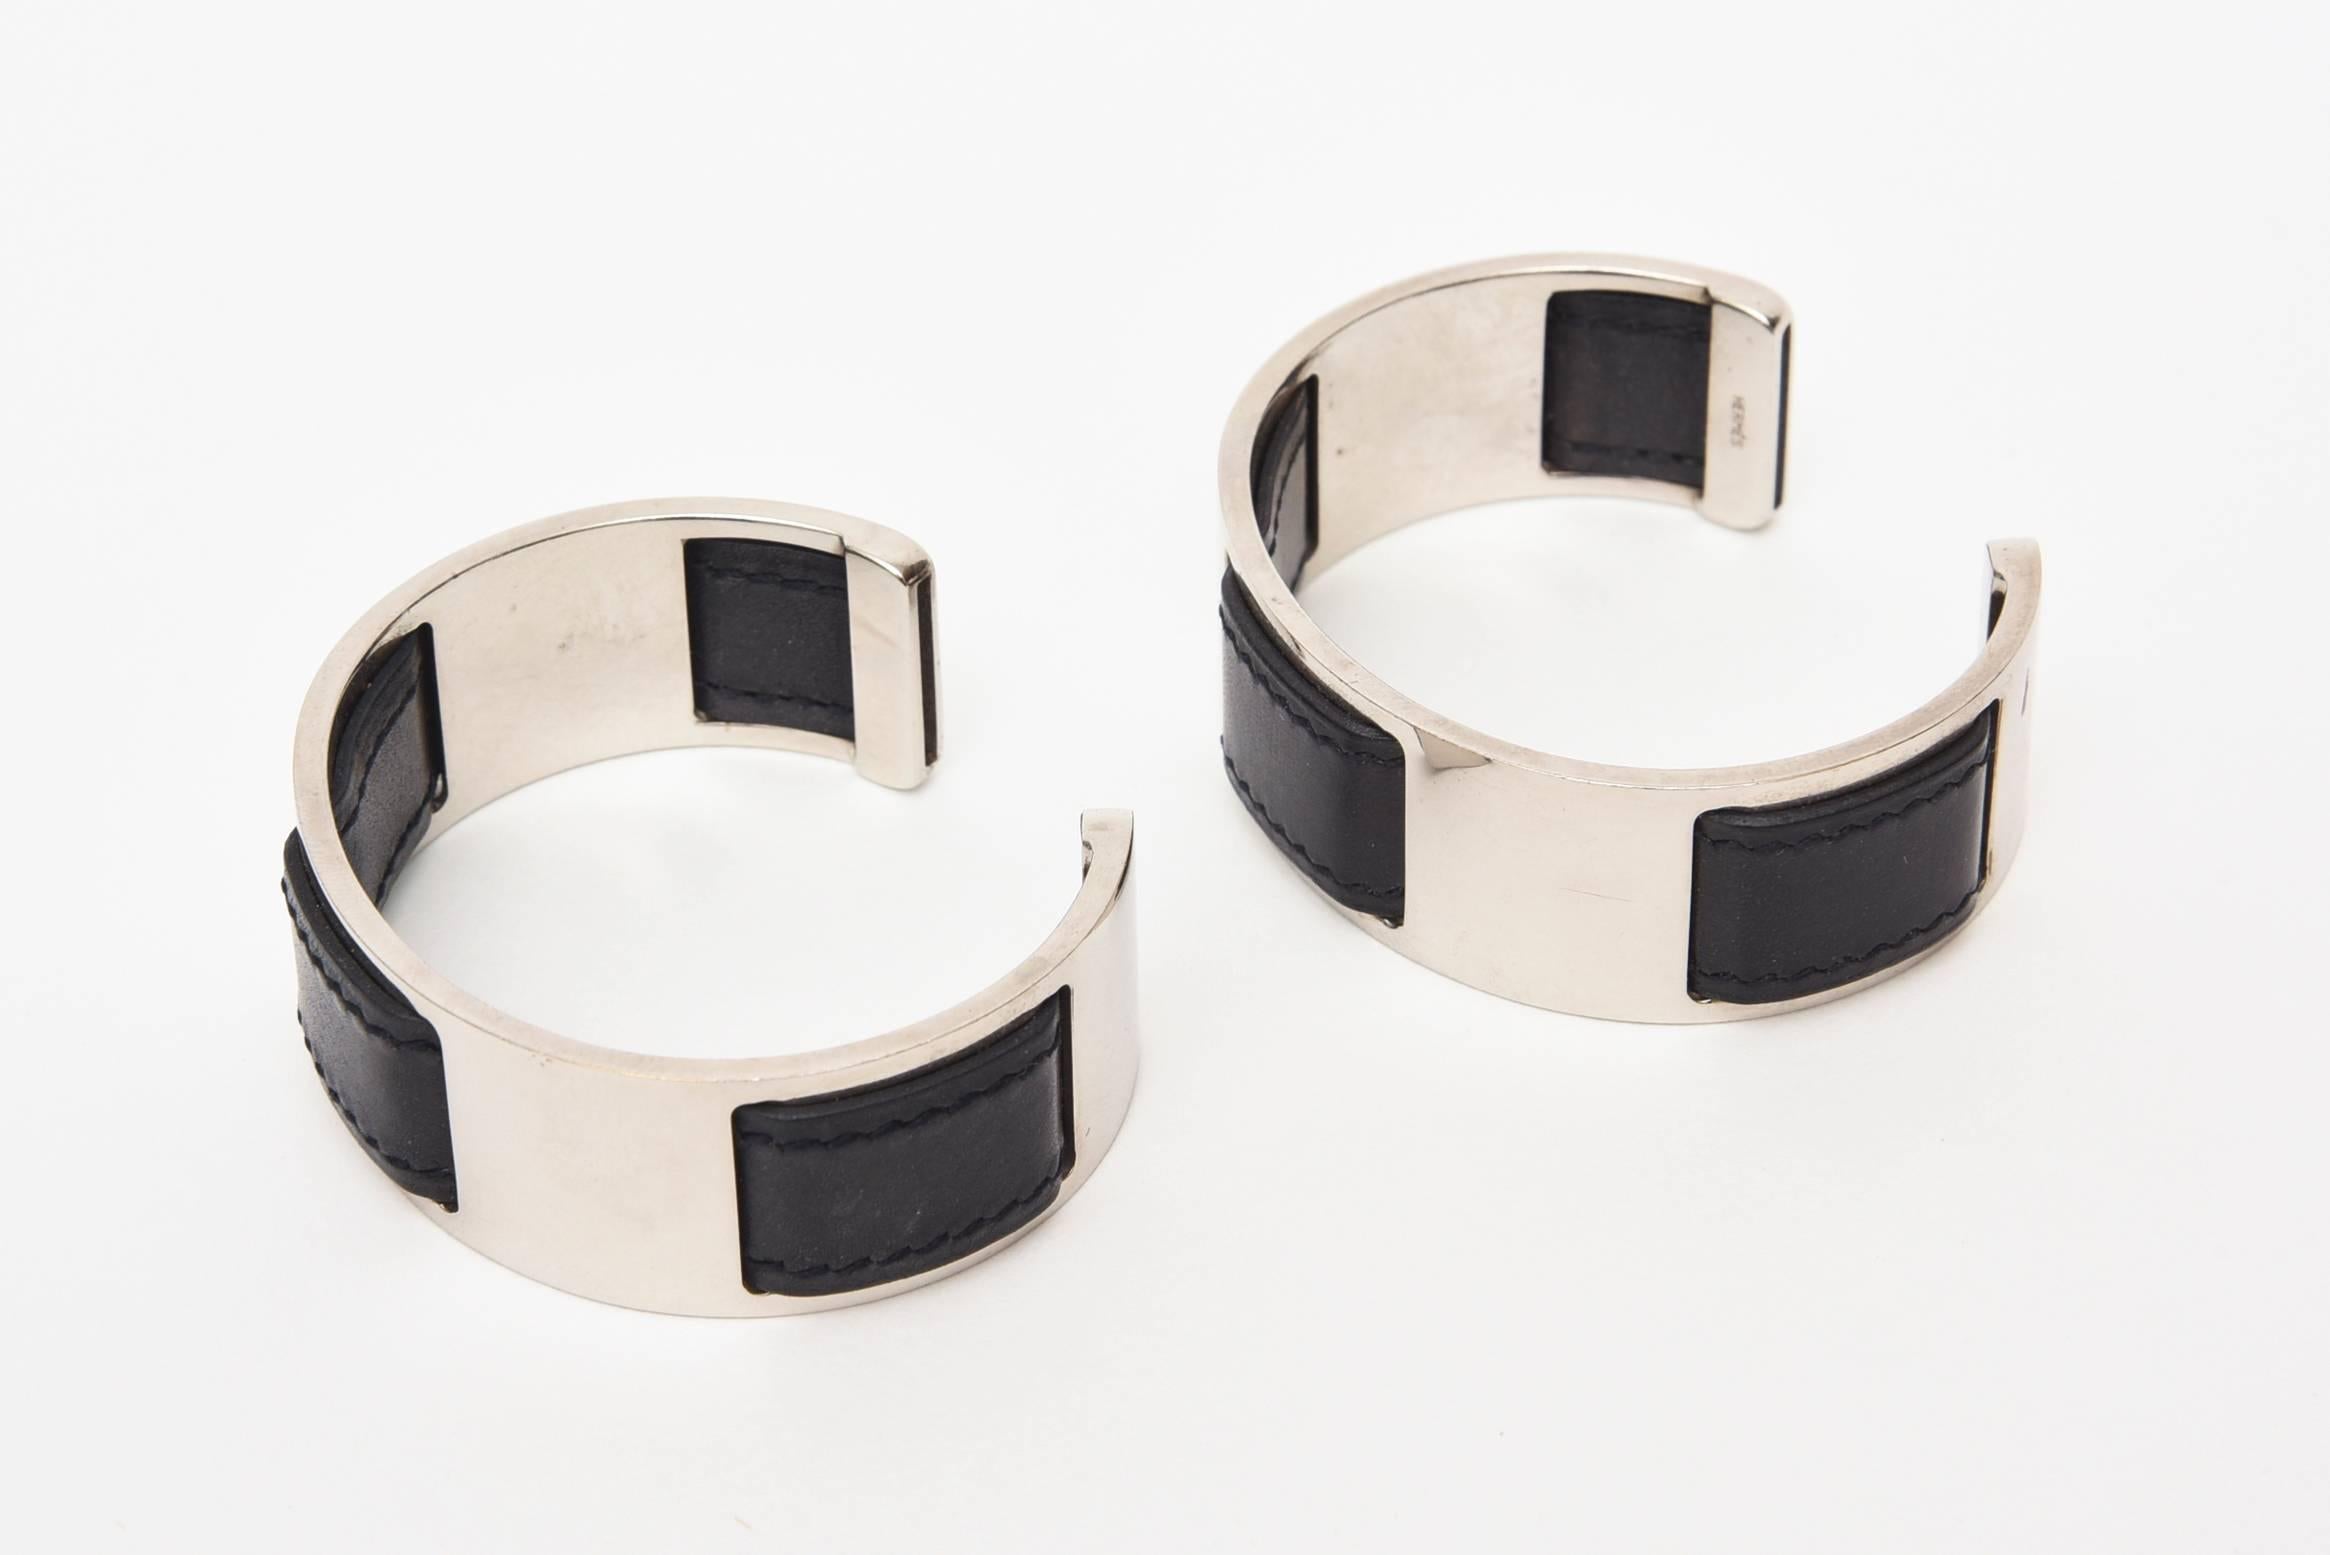 Diese klassischen, aber ungewöhnlichen Armbänder wurden von Martin Margiela für Hermes entworfen und bestehen aus schwarzem Leder und Chrom. Sie müssen als Paar getragen werden, um die große Wirkung zu erzielen. Man kann sie an jedem Handgelenk oder